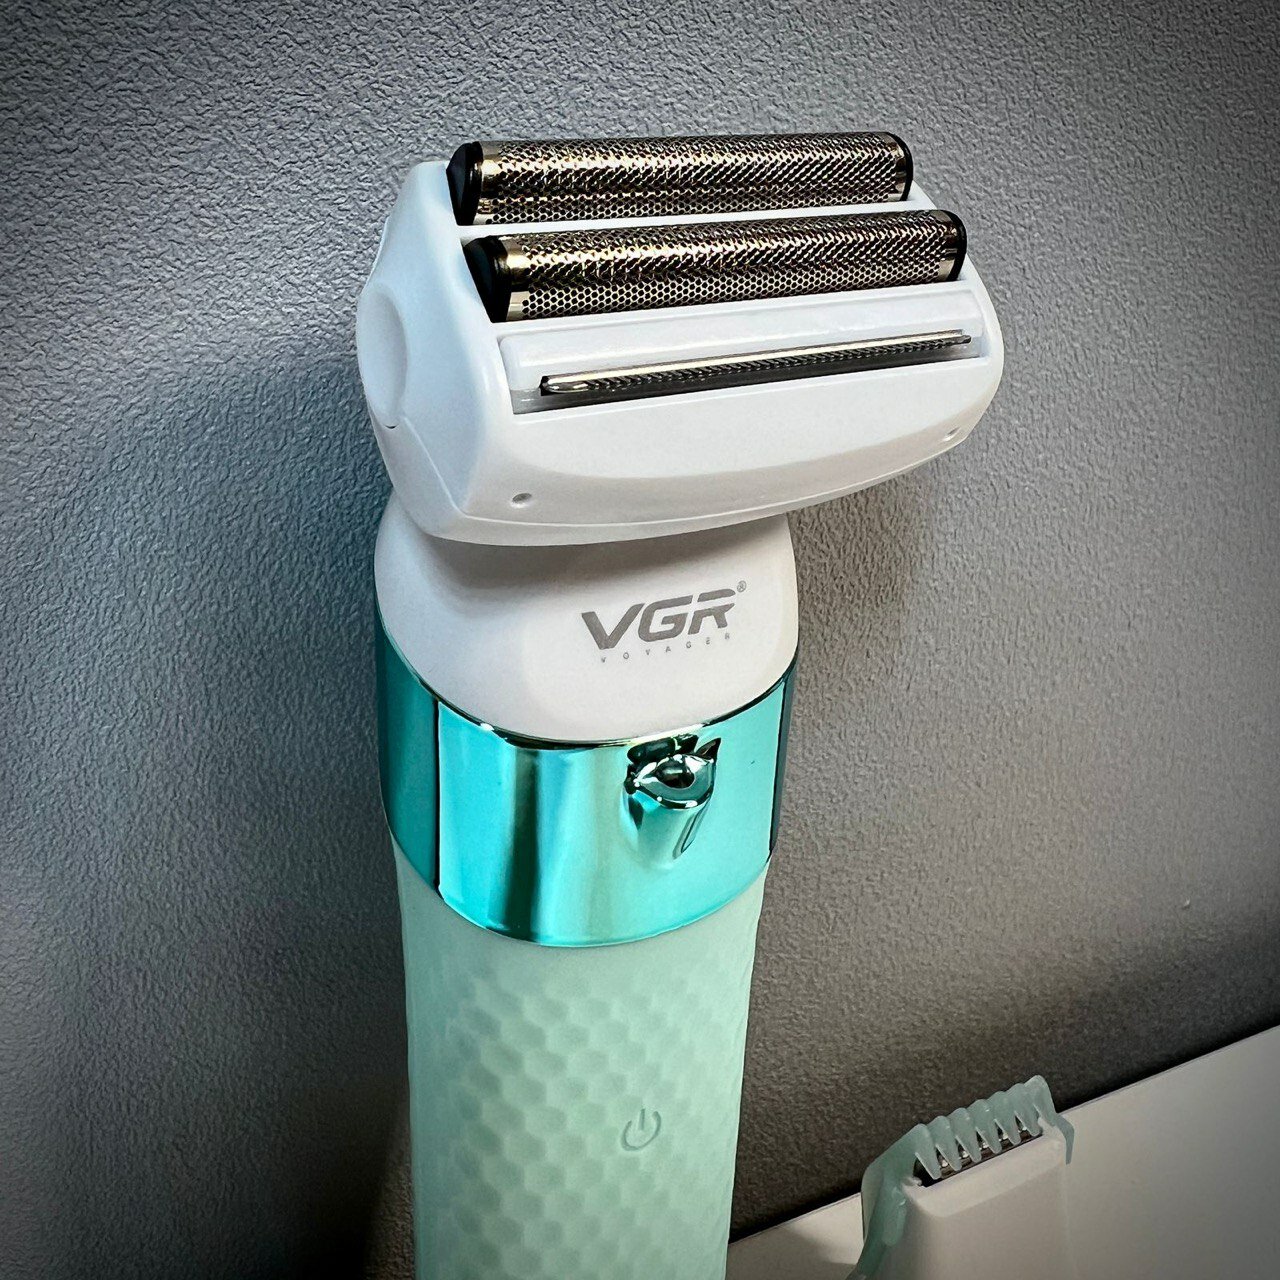 Водостойкая беспроводная женская электробритва VGR 2 в 1 для удаления волос на теле / для рук, ног и зоны бикини / бирюза